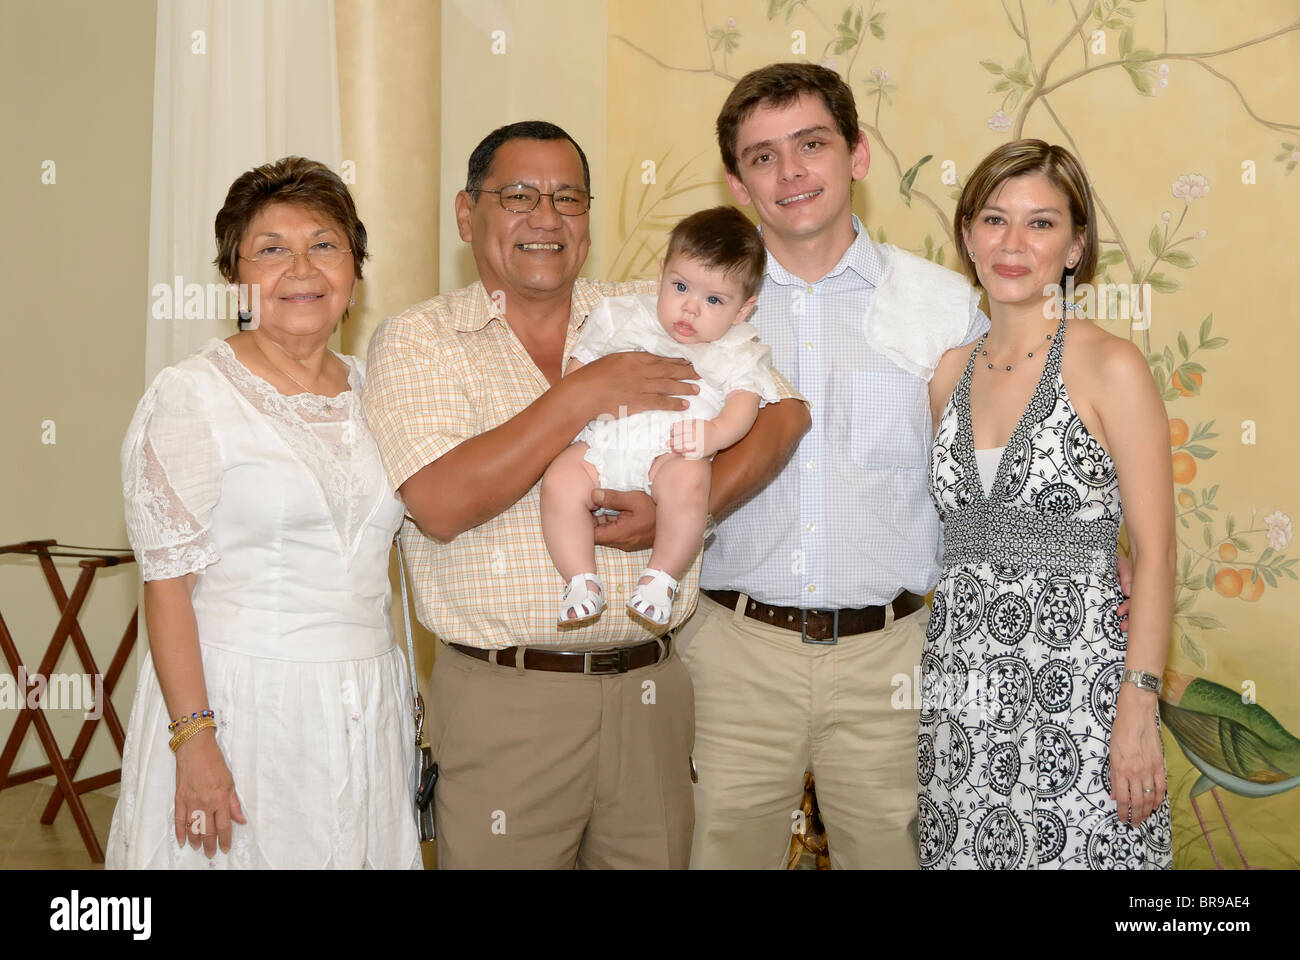 Merida, Yucatan/Mexico-July 8 : Bébé garçon baptême célébration. Photo de groupe de la famille. Les parents et amis Banque D'Images